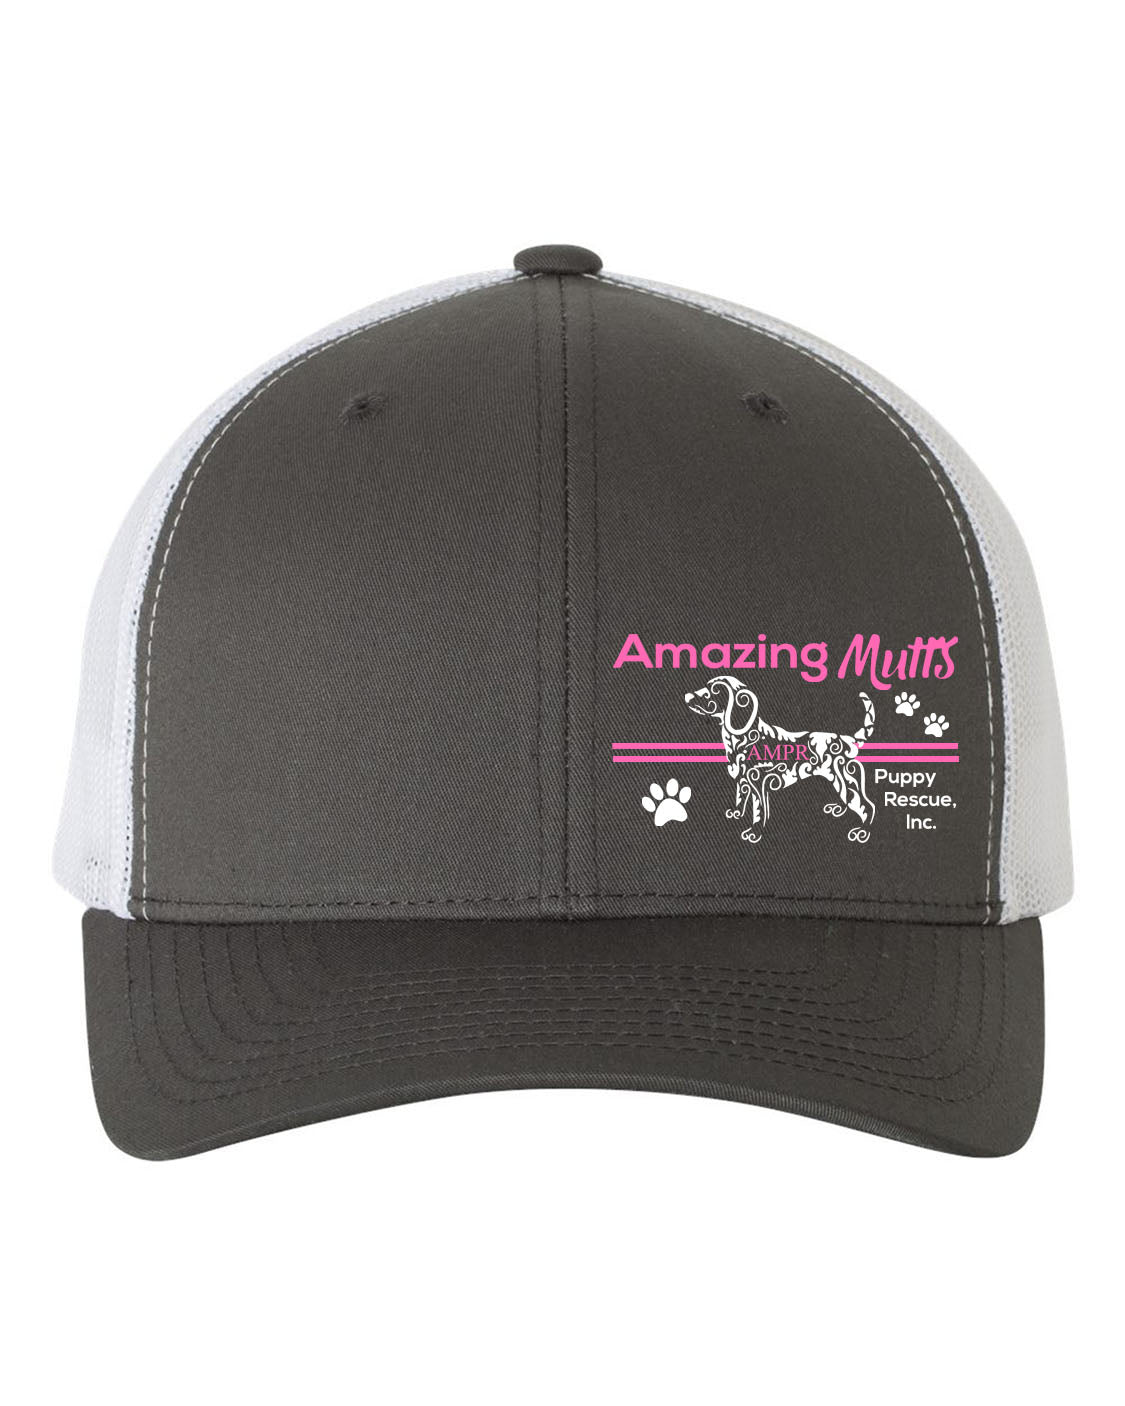 AMPR Design 9 Trucker Hat